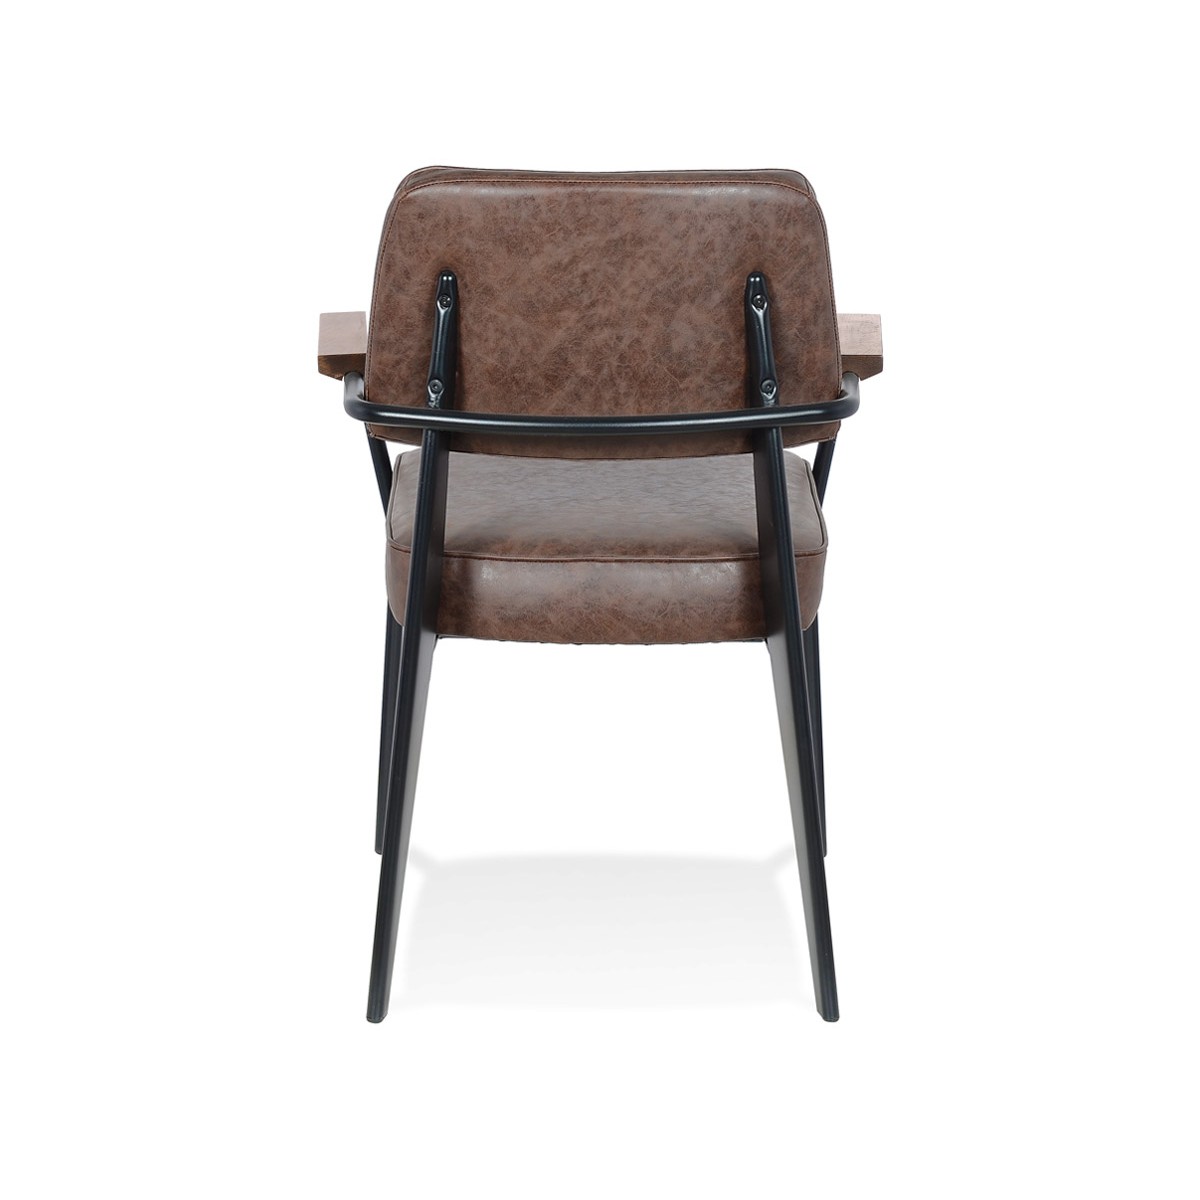 Vintage-Stuhl mit hochwertigen Materialien und schicken Linien